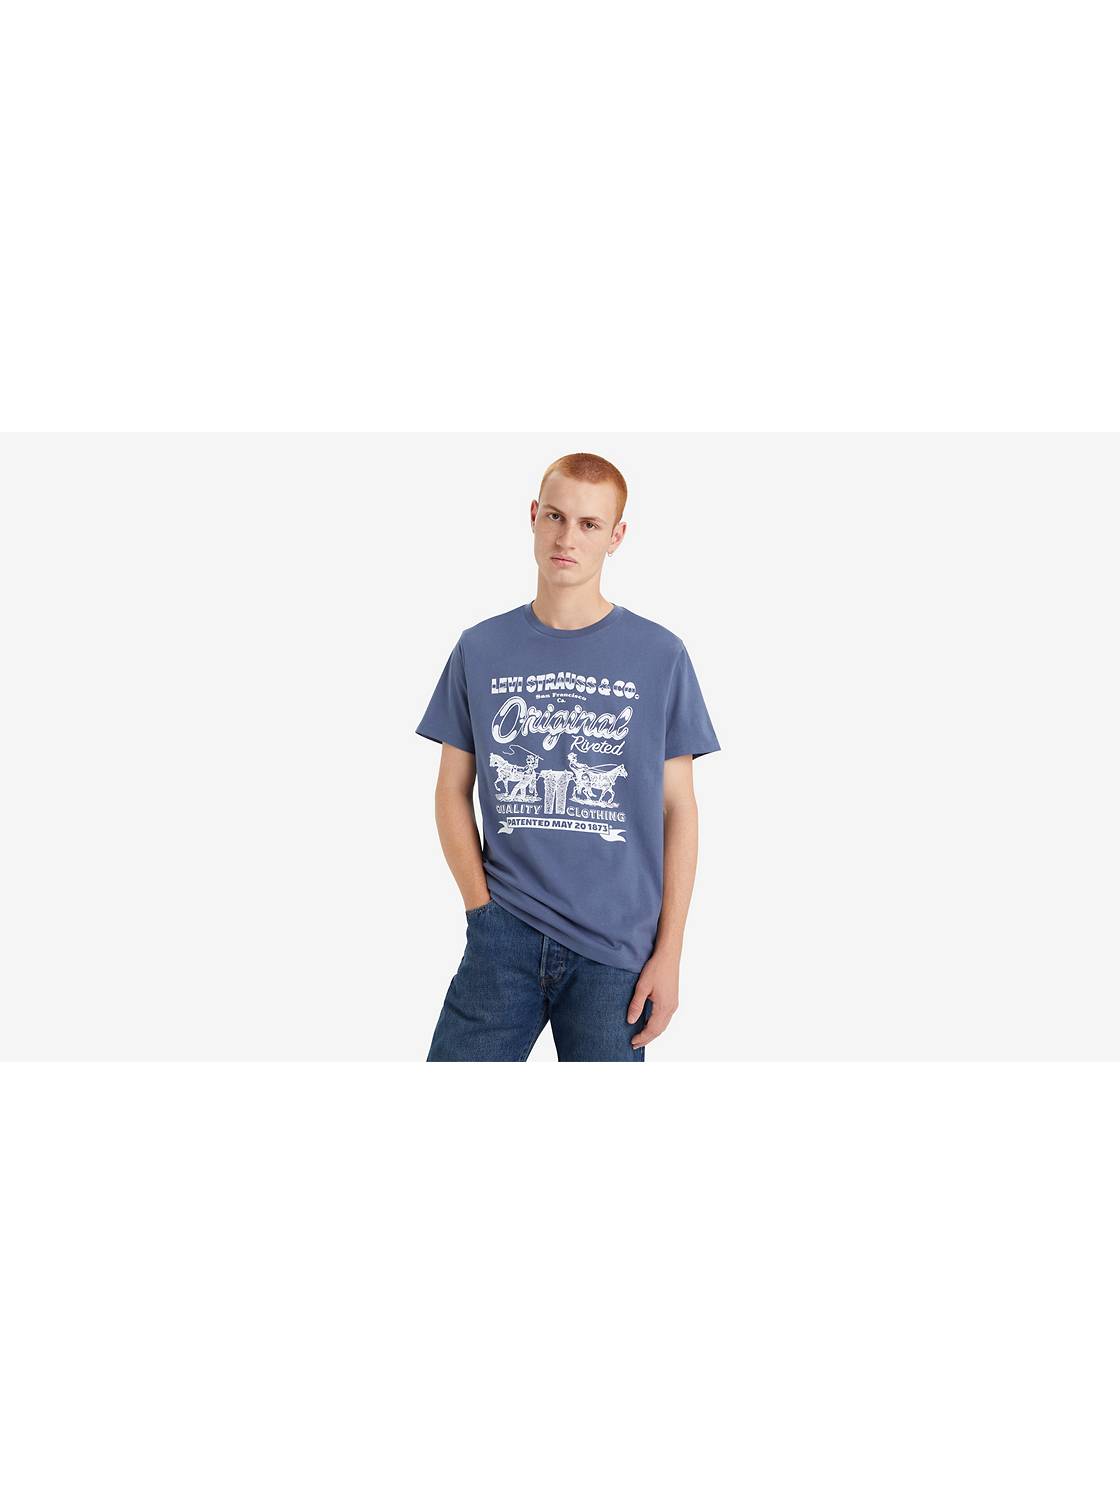 Levi's T-Shirt Mc Homme LEVIS GRIS pas cher - T-shirt manches